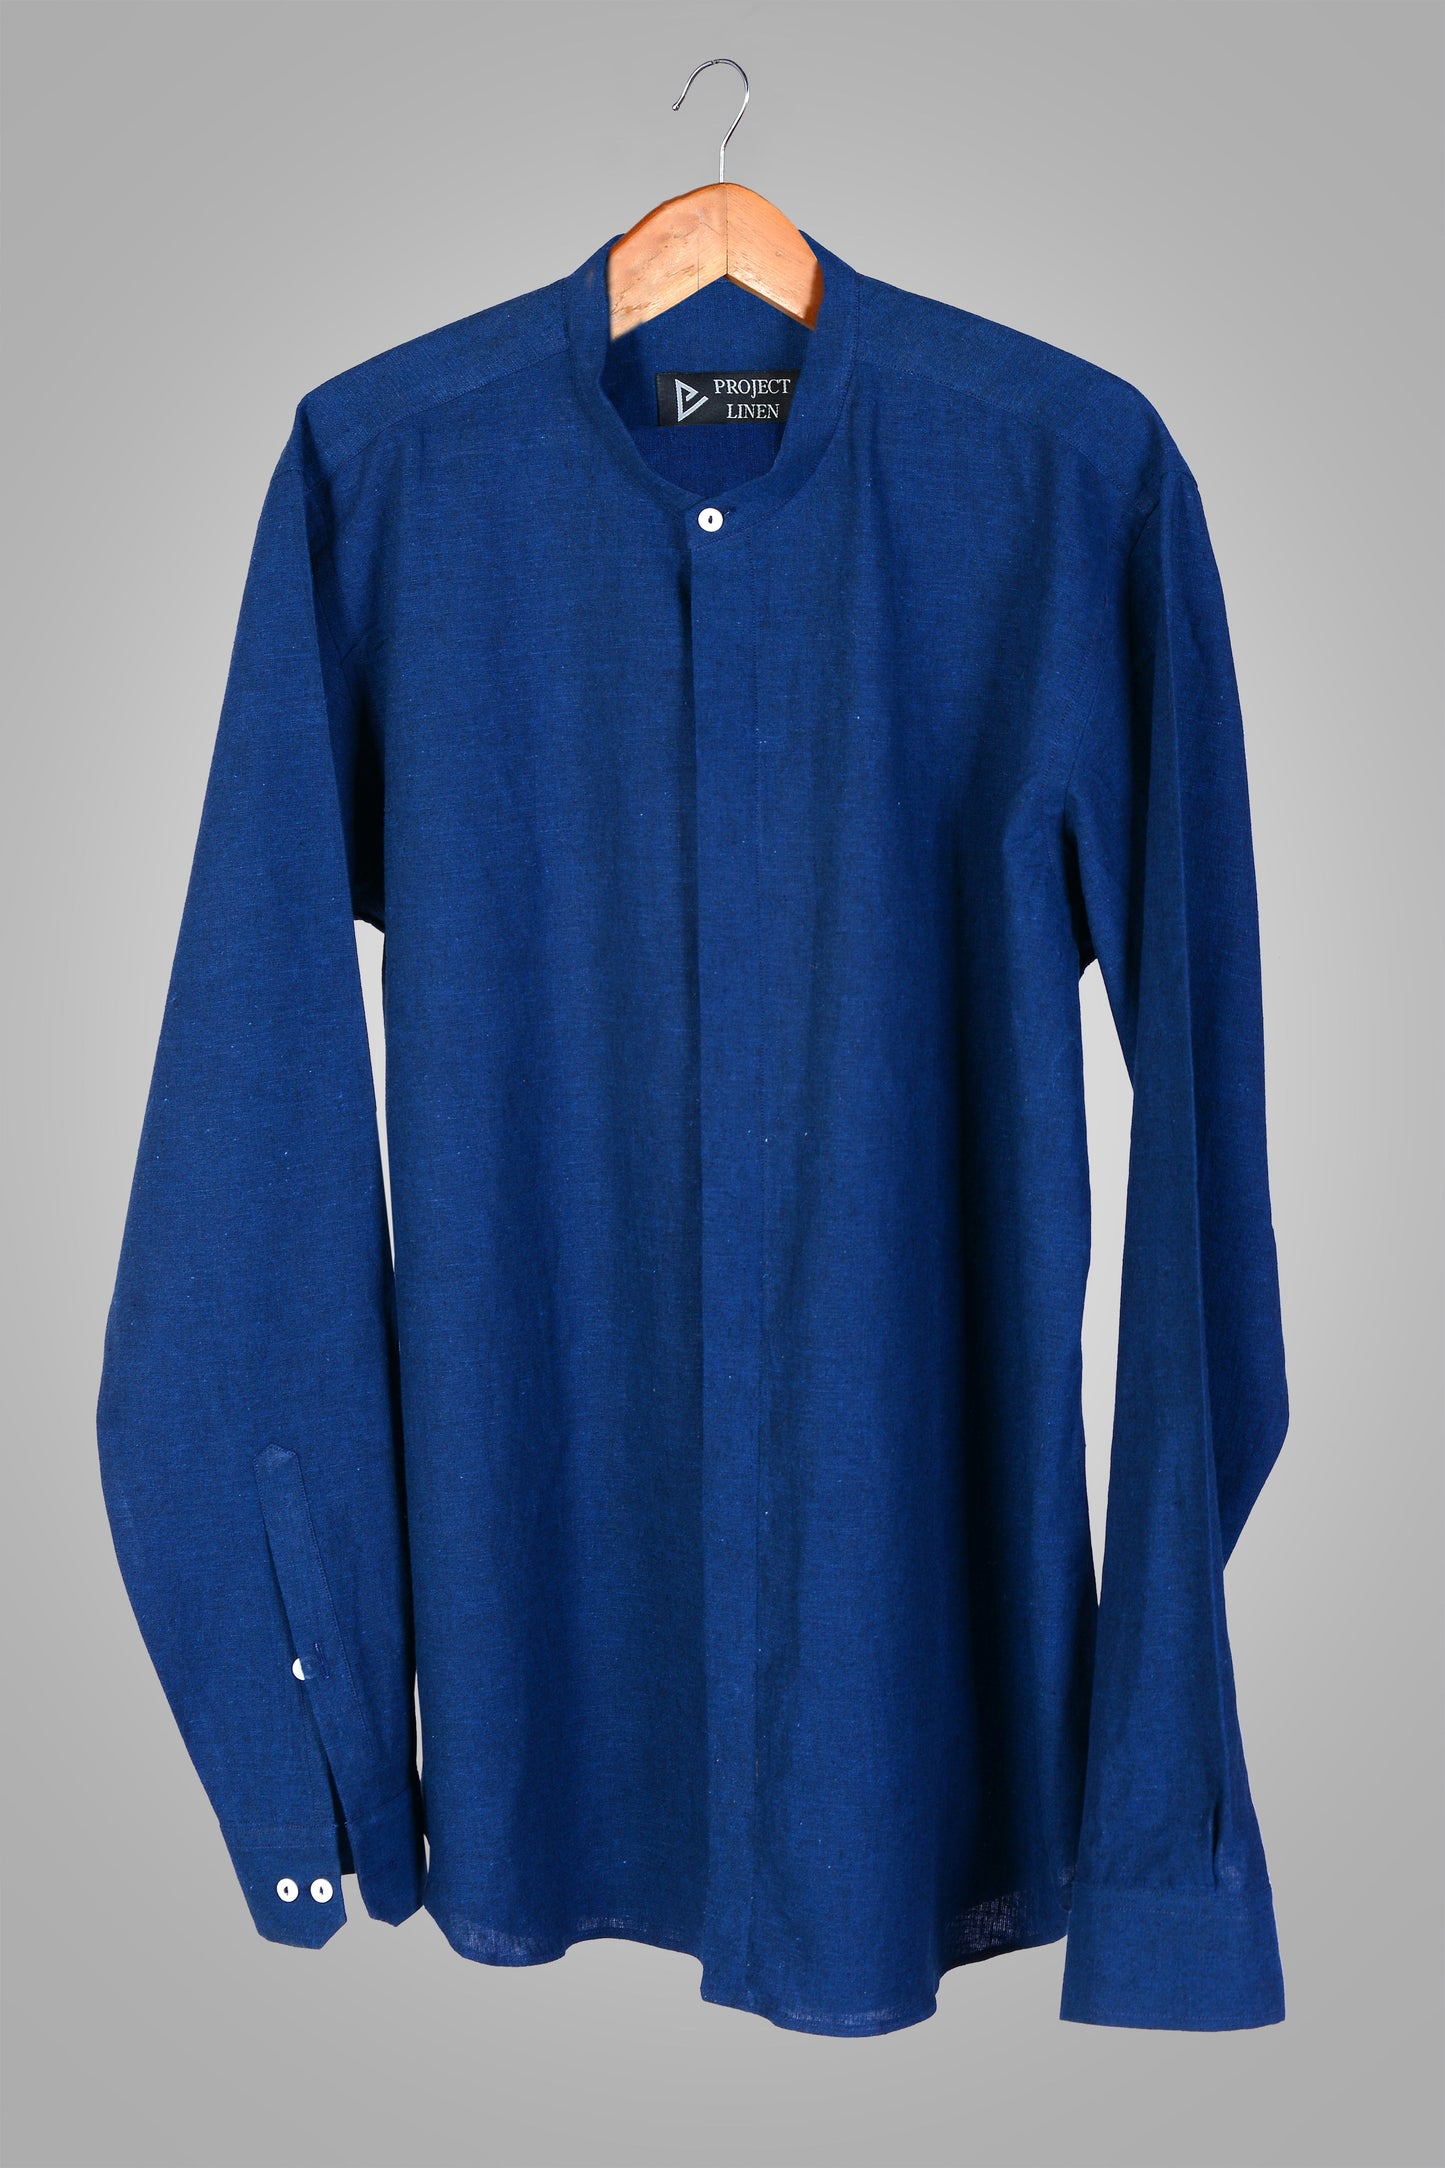 Berry Blue linen shirt - Her's